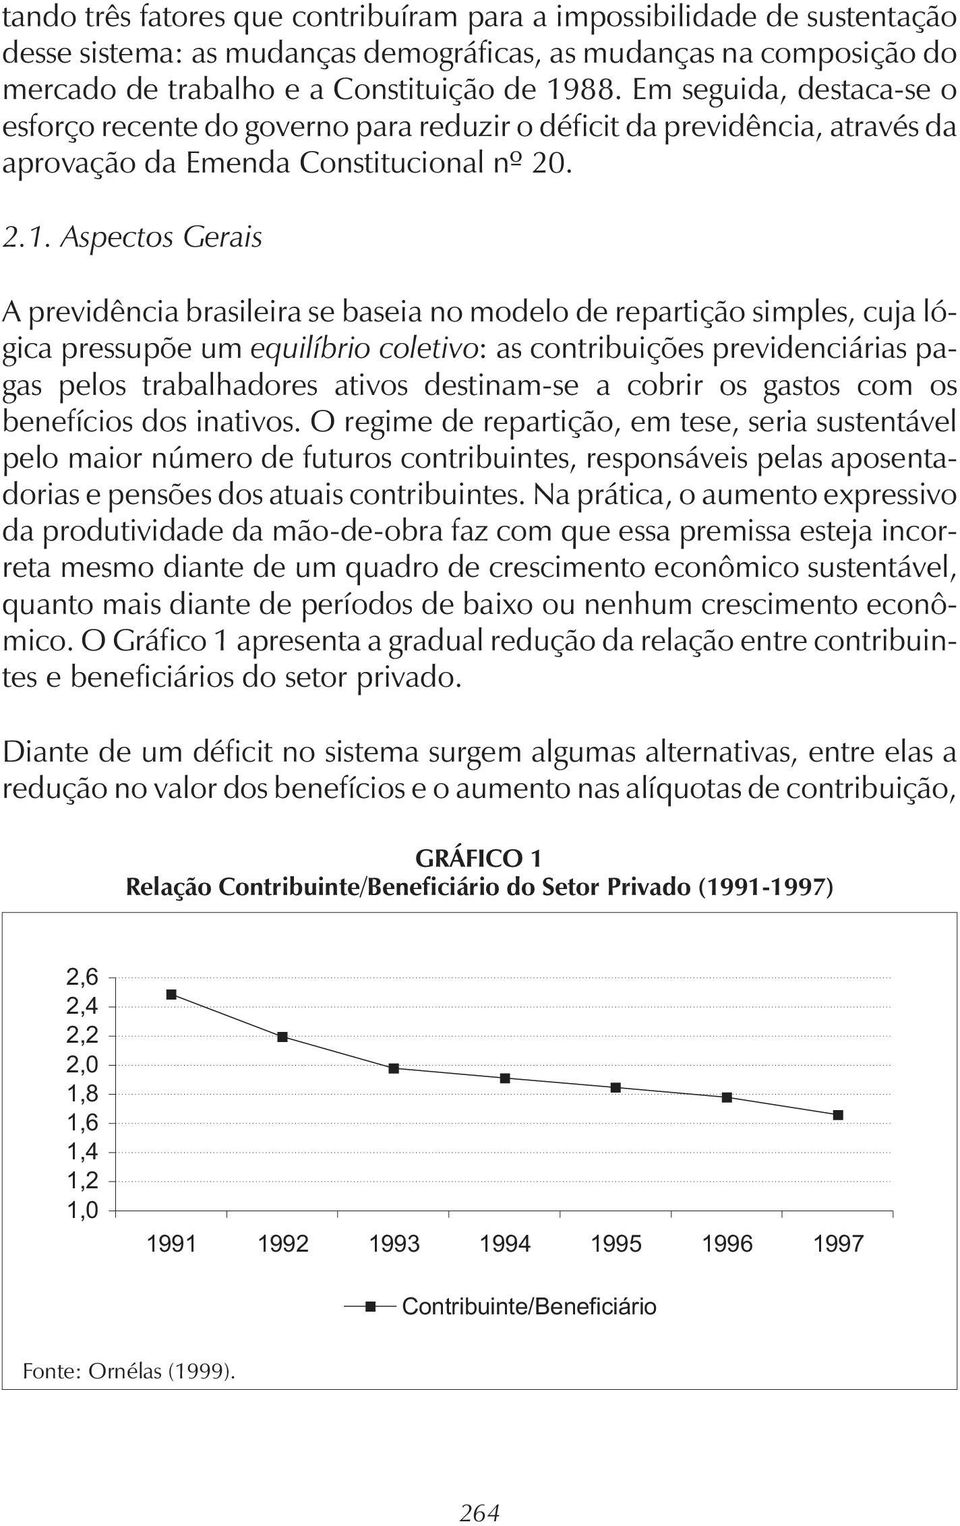 Aspectos Gerais A previdência brasileira se baseia no modelo de repartição simples, cuja lógica pressupõe um equilíbrio coletivo: as contribuições previdenciárias pagas pelos trabalhadores ativos